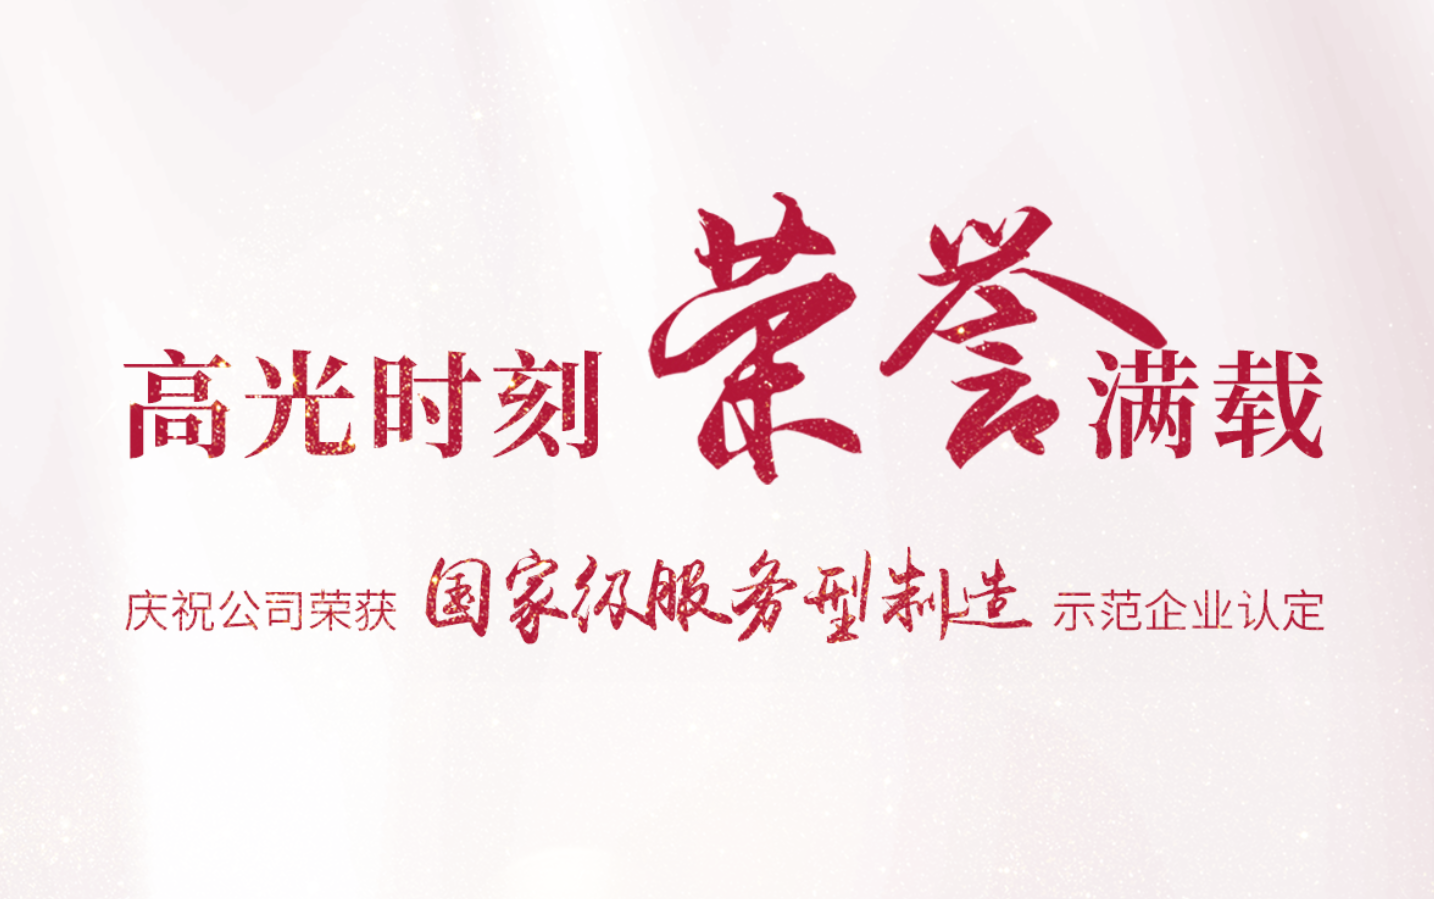 乐动在线(中国)唯一官方网站荣膺省内唯一一家国家级“服务型制造示范企业”